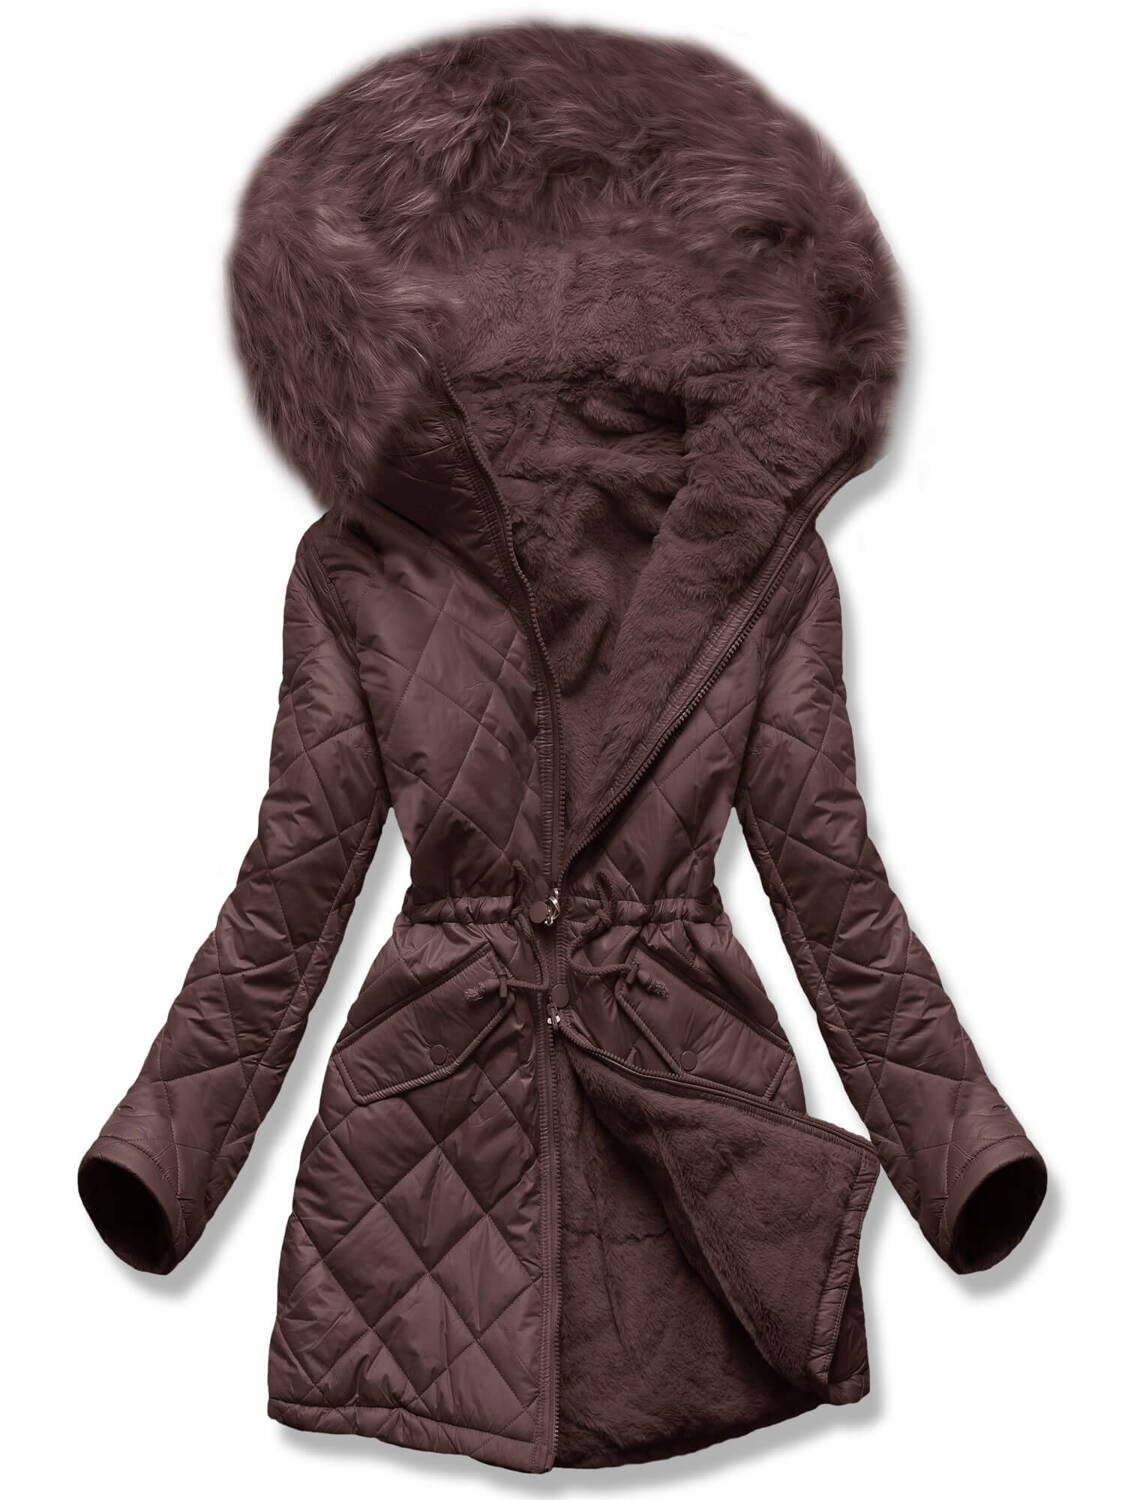 Brązowa dwustronna zimowa kurtka damska pikowana w karo